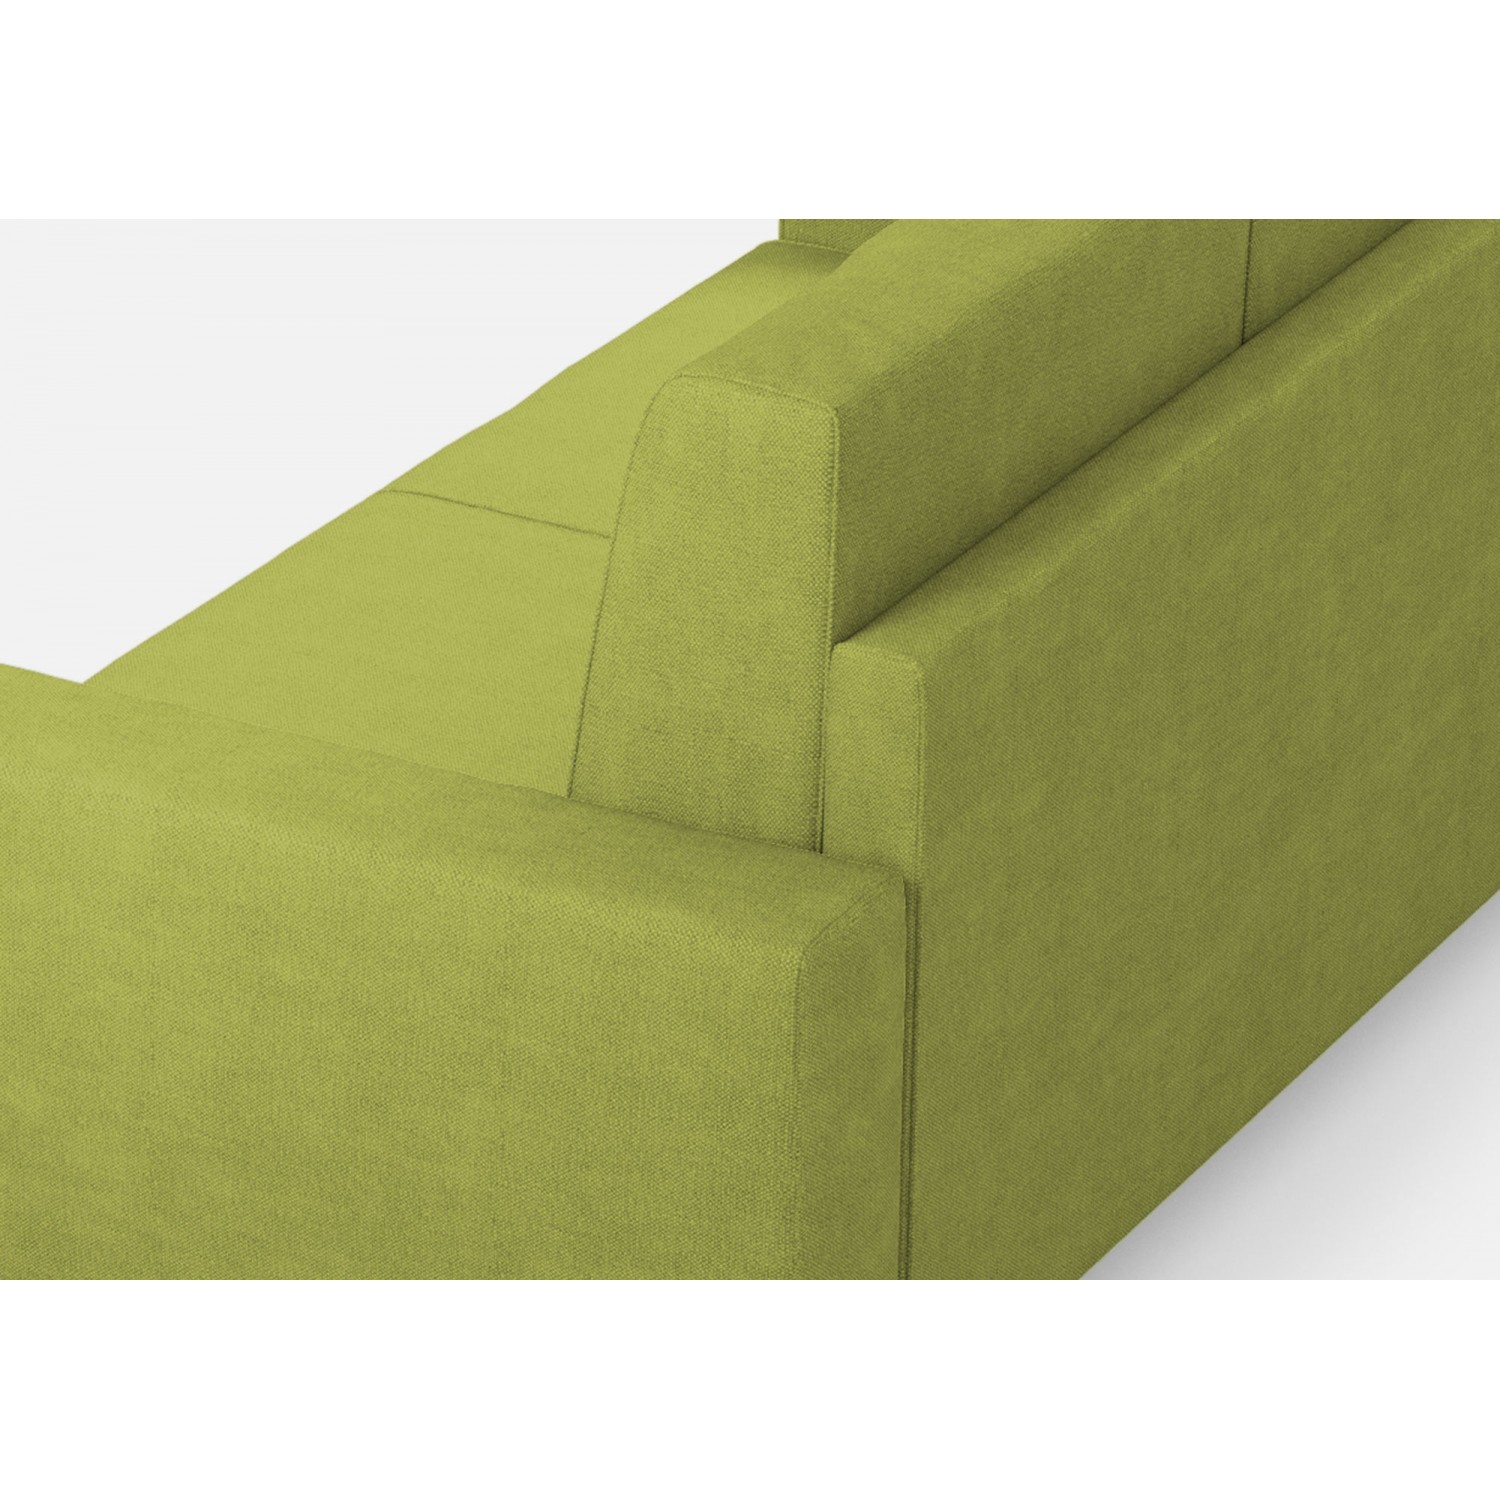 Ityhome Divano Sakar 3 posti (tre sedute da 60cm)+ angolo + divano 2 posti medio (due sedute da 70cm) misure esterne L.286x246 colore verde